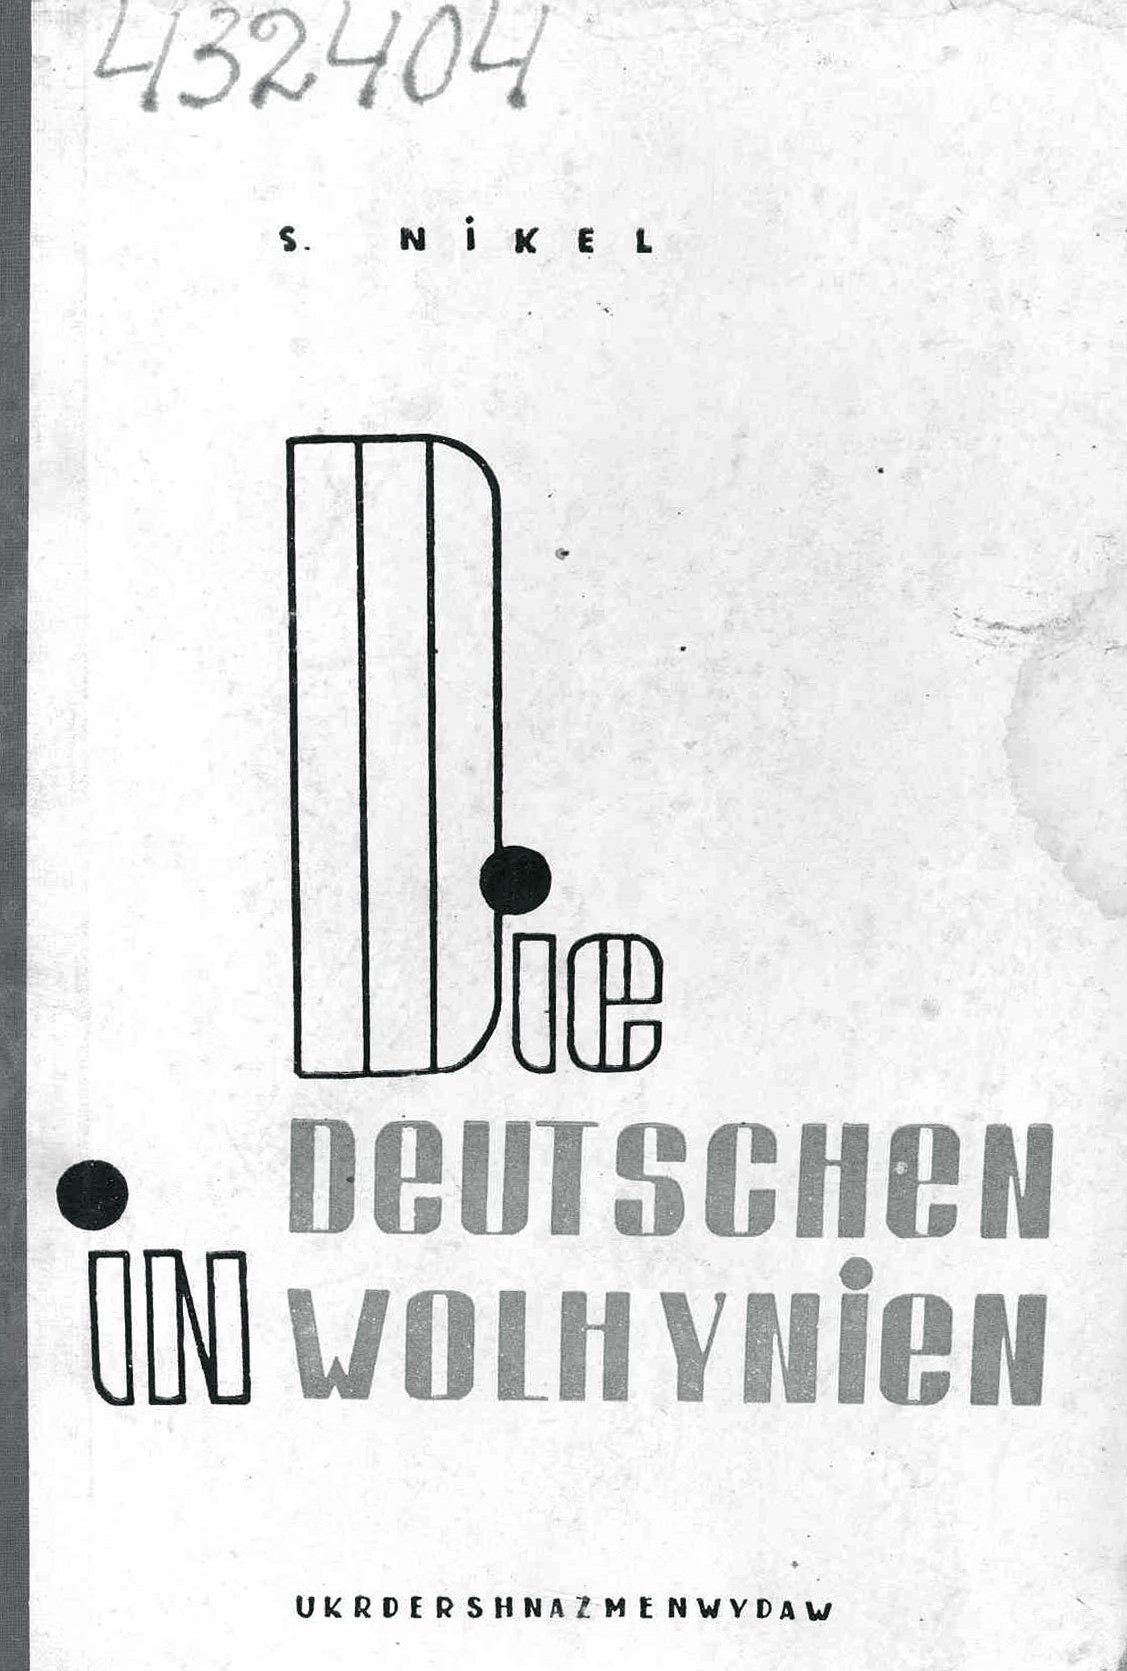  Umschlag von Samuel Nickels Buch „Die Deutschen in Wolhynien“. 1935. Archiv von Dr. Mychailo Kostjuk 